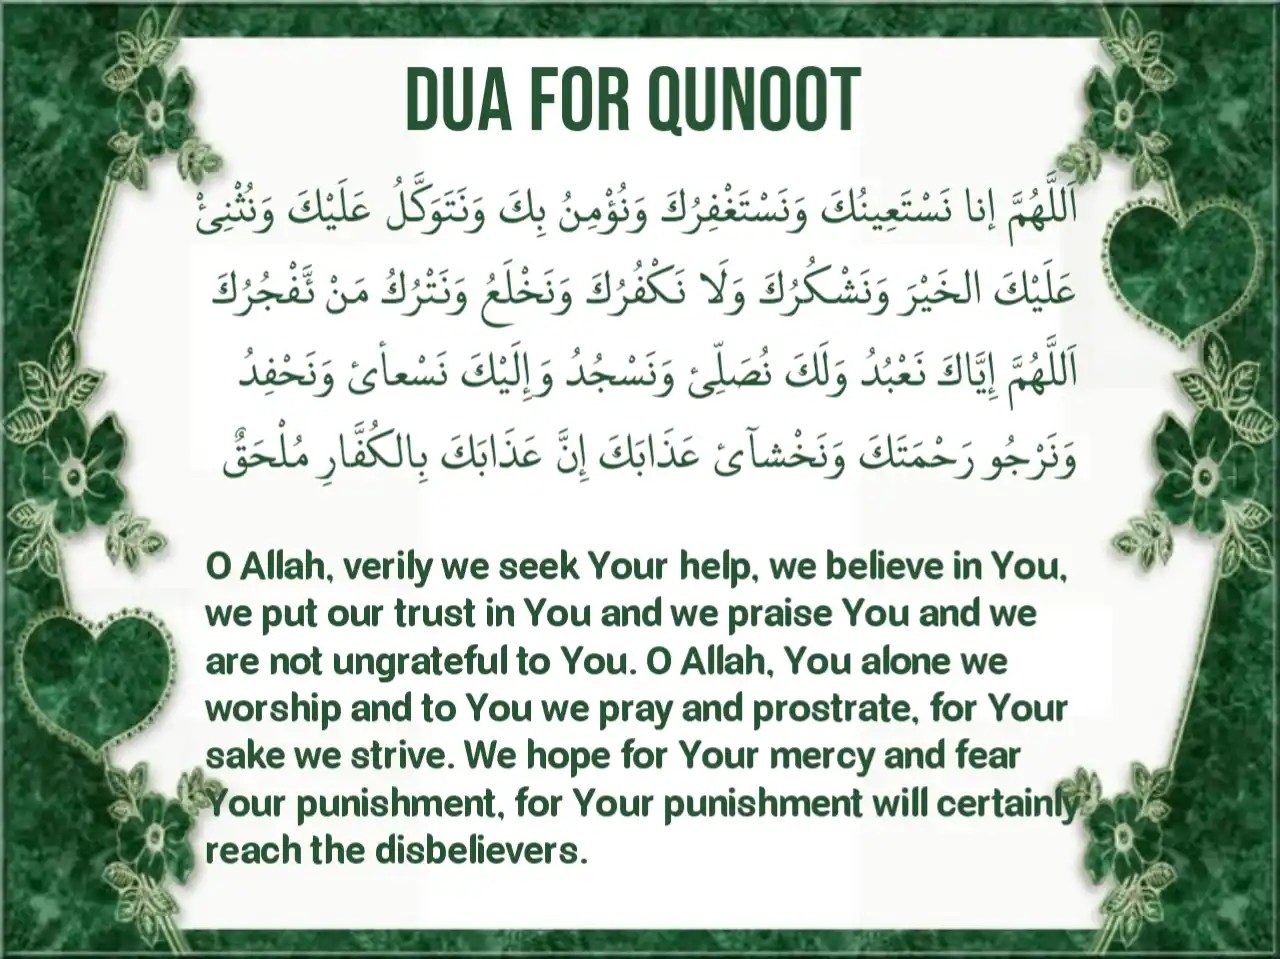 Qunoot witr qunut quran text doa prayer surah iman duaa urdu gambar salaah hanafi deen transliteration asaan gemt